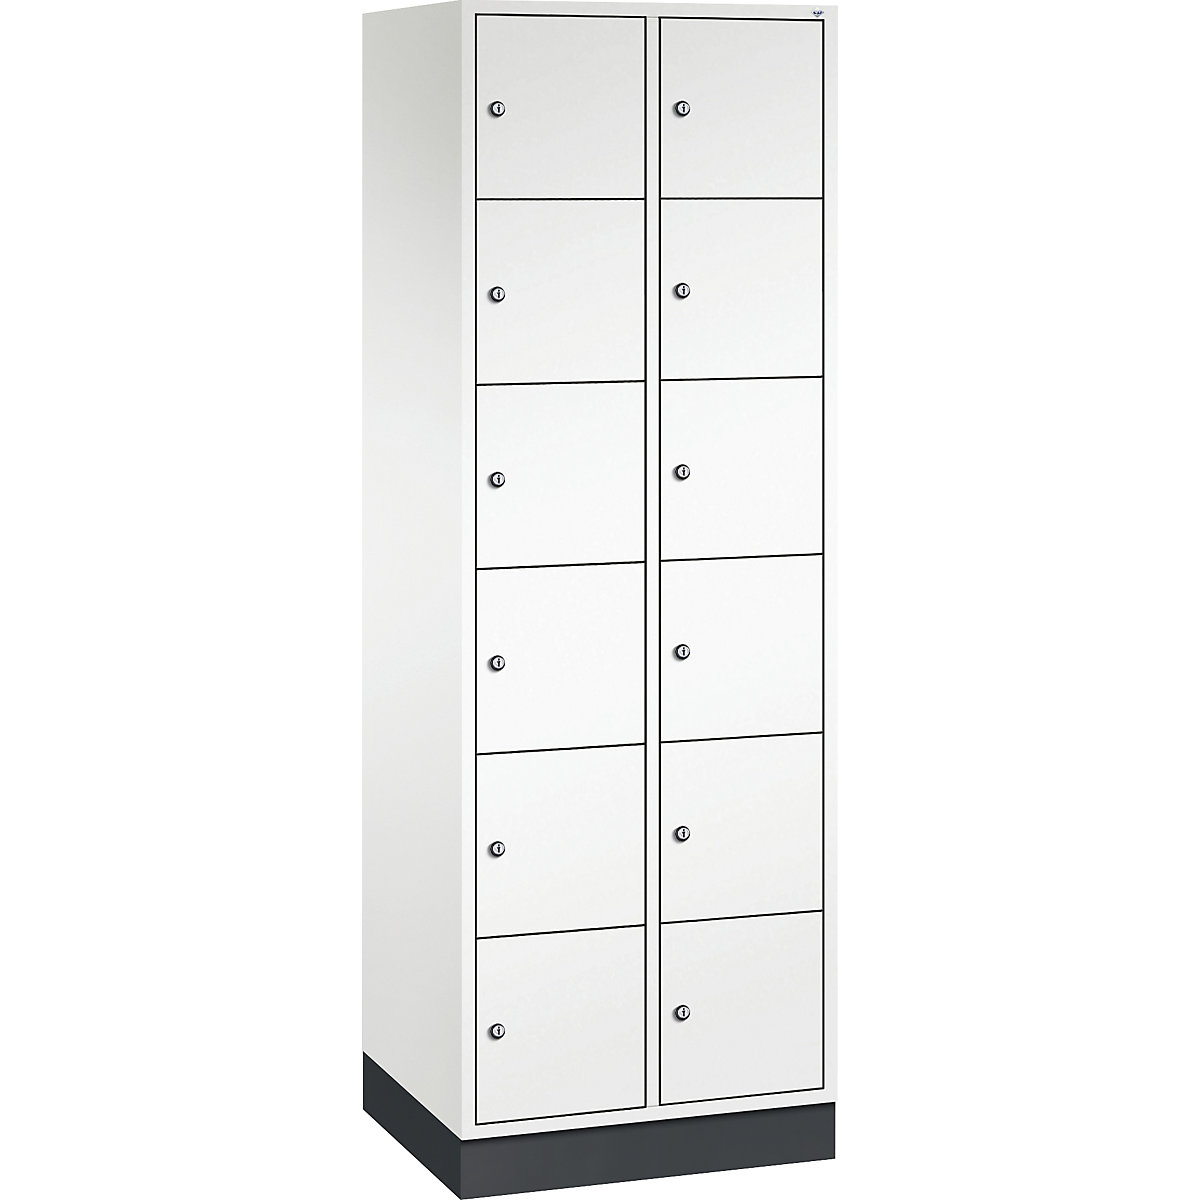 Vestiaire multicases en acier INTRO, casiers hauteur 285 mm – C+P, l x p 620 x 500 mm, 12 casiers, corps blanc pur, portes blanc pur-4